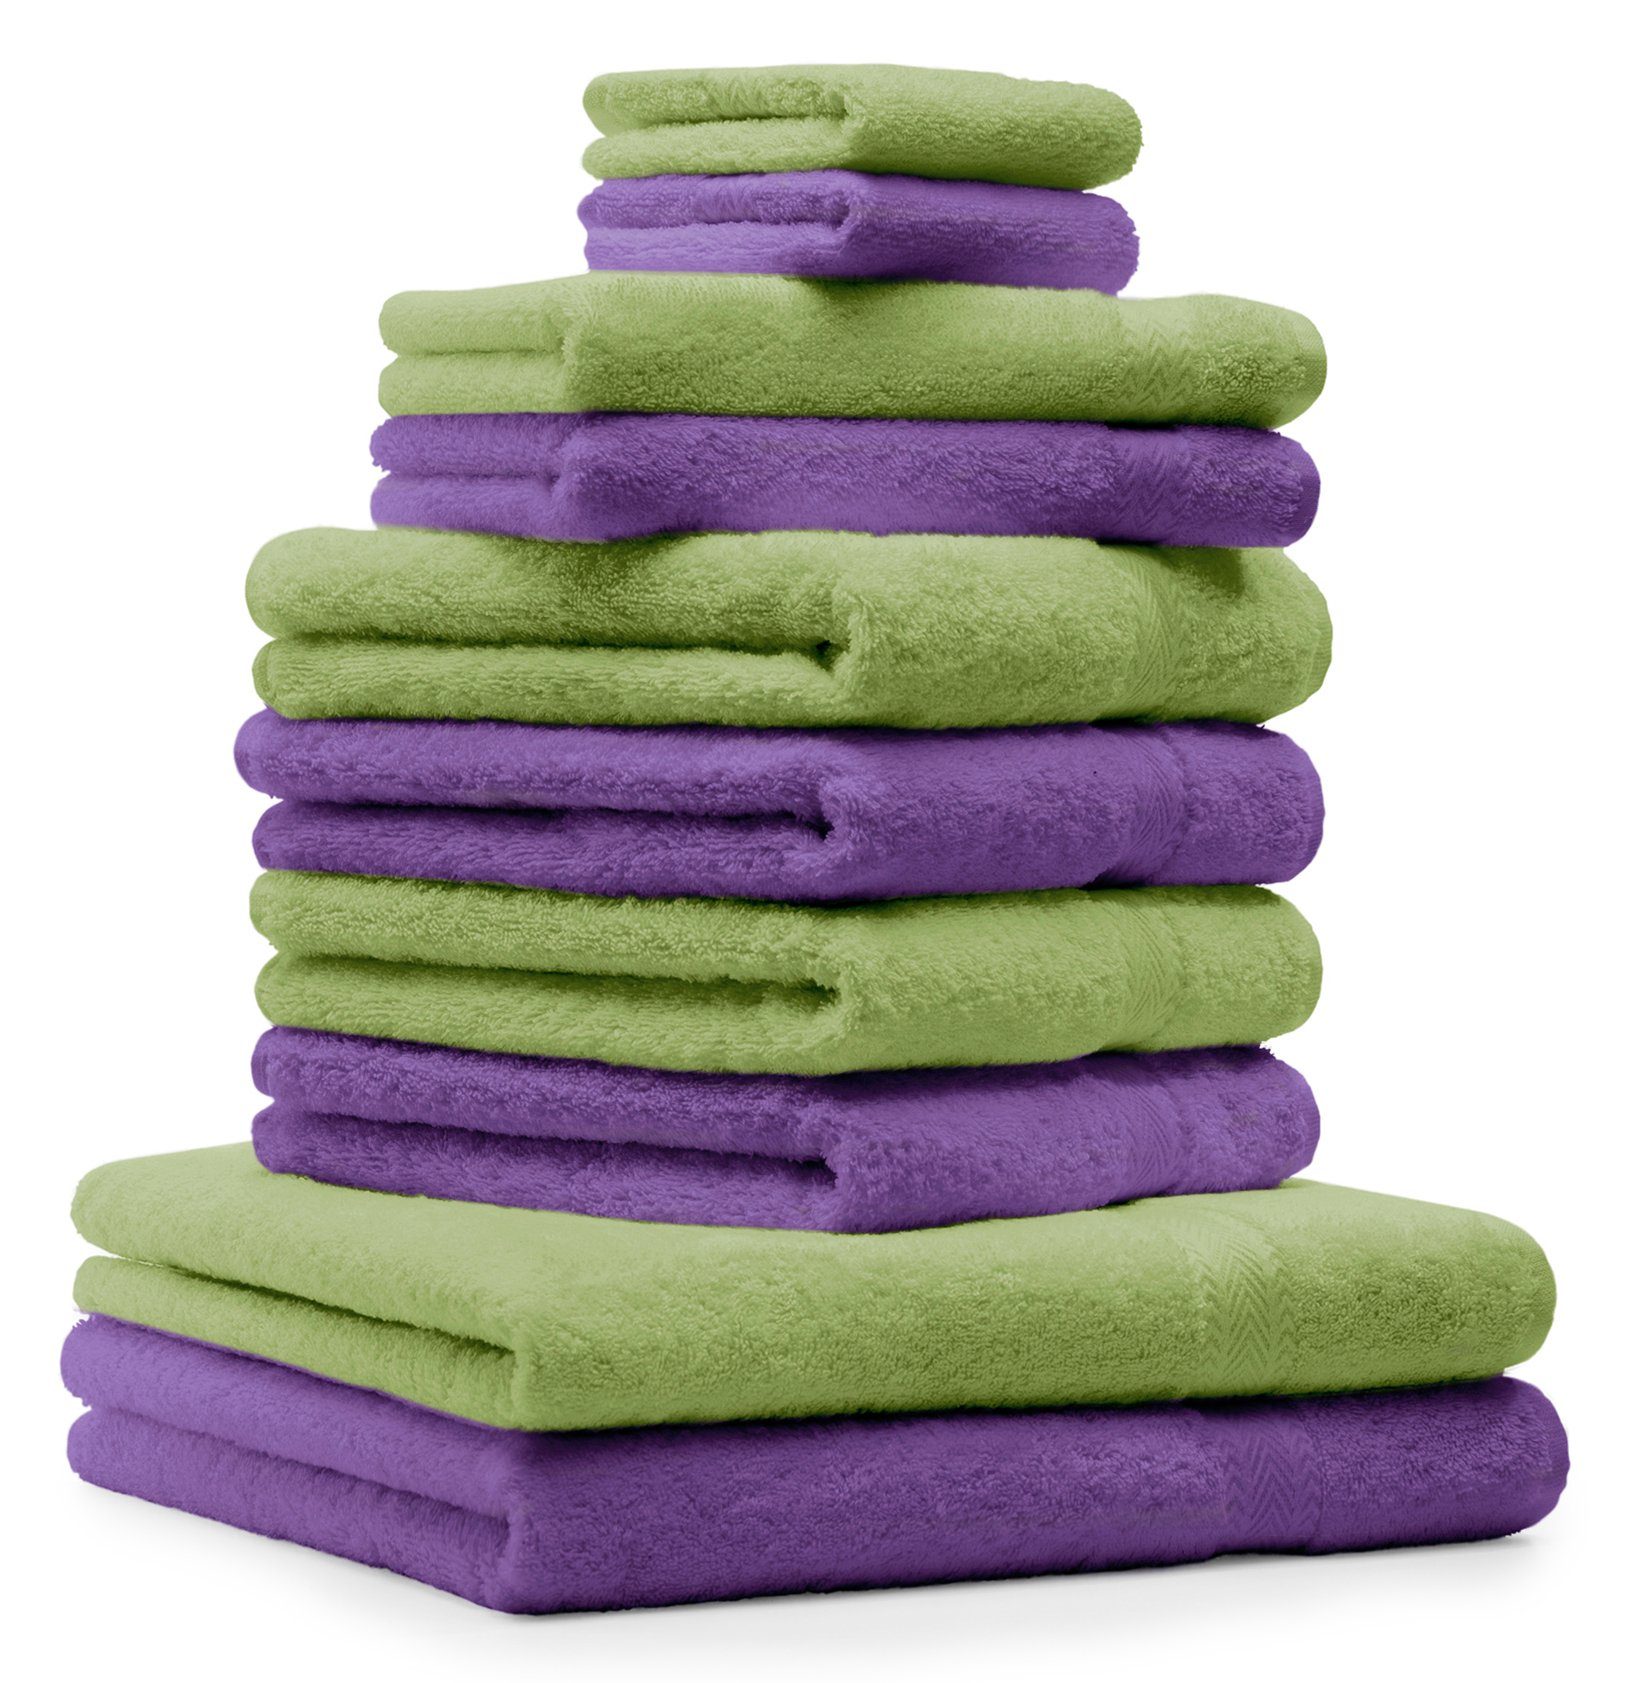 Betz Handtuch Set 10-TLG. Handtücher-Set Classic Farbe apfelgrün und lila, 100% Baumwolle